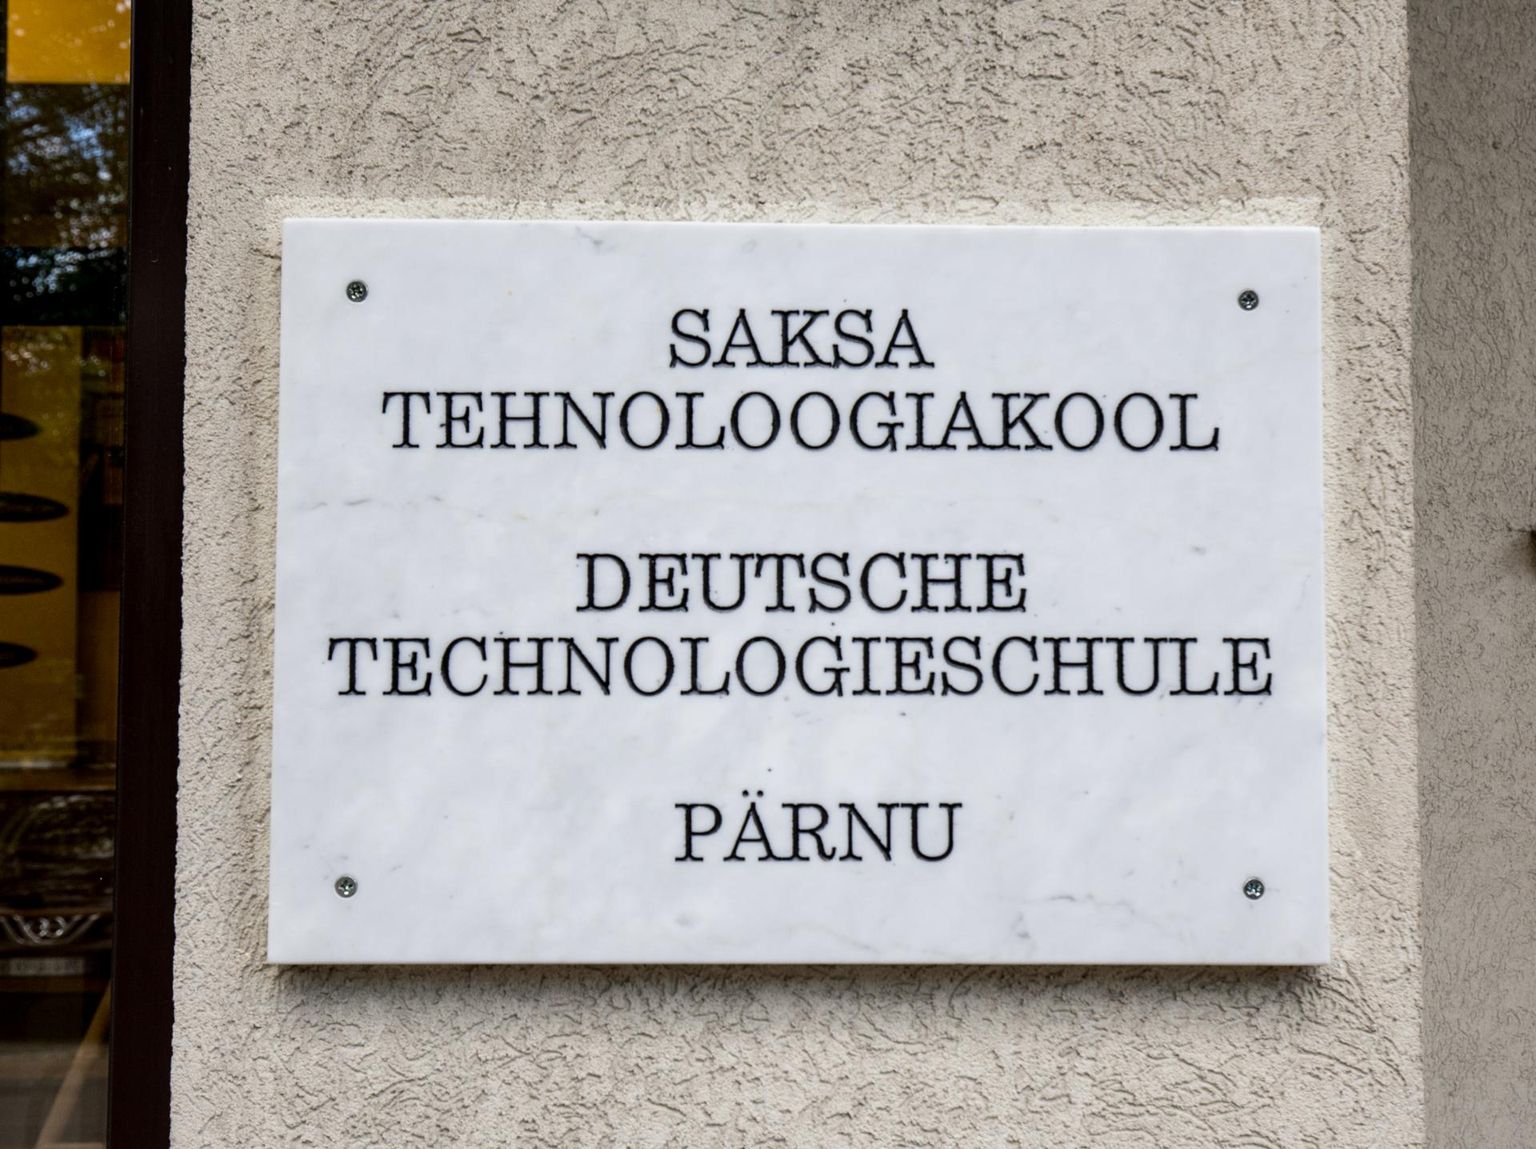 Pärnu Saksa tehnoloogiakool.